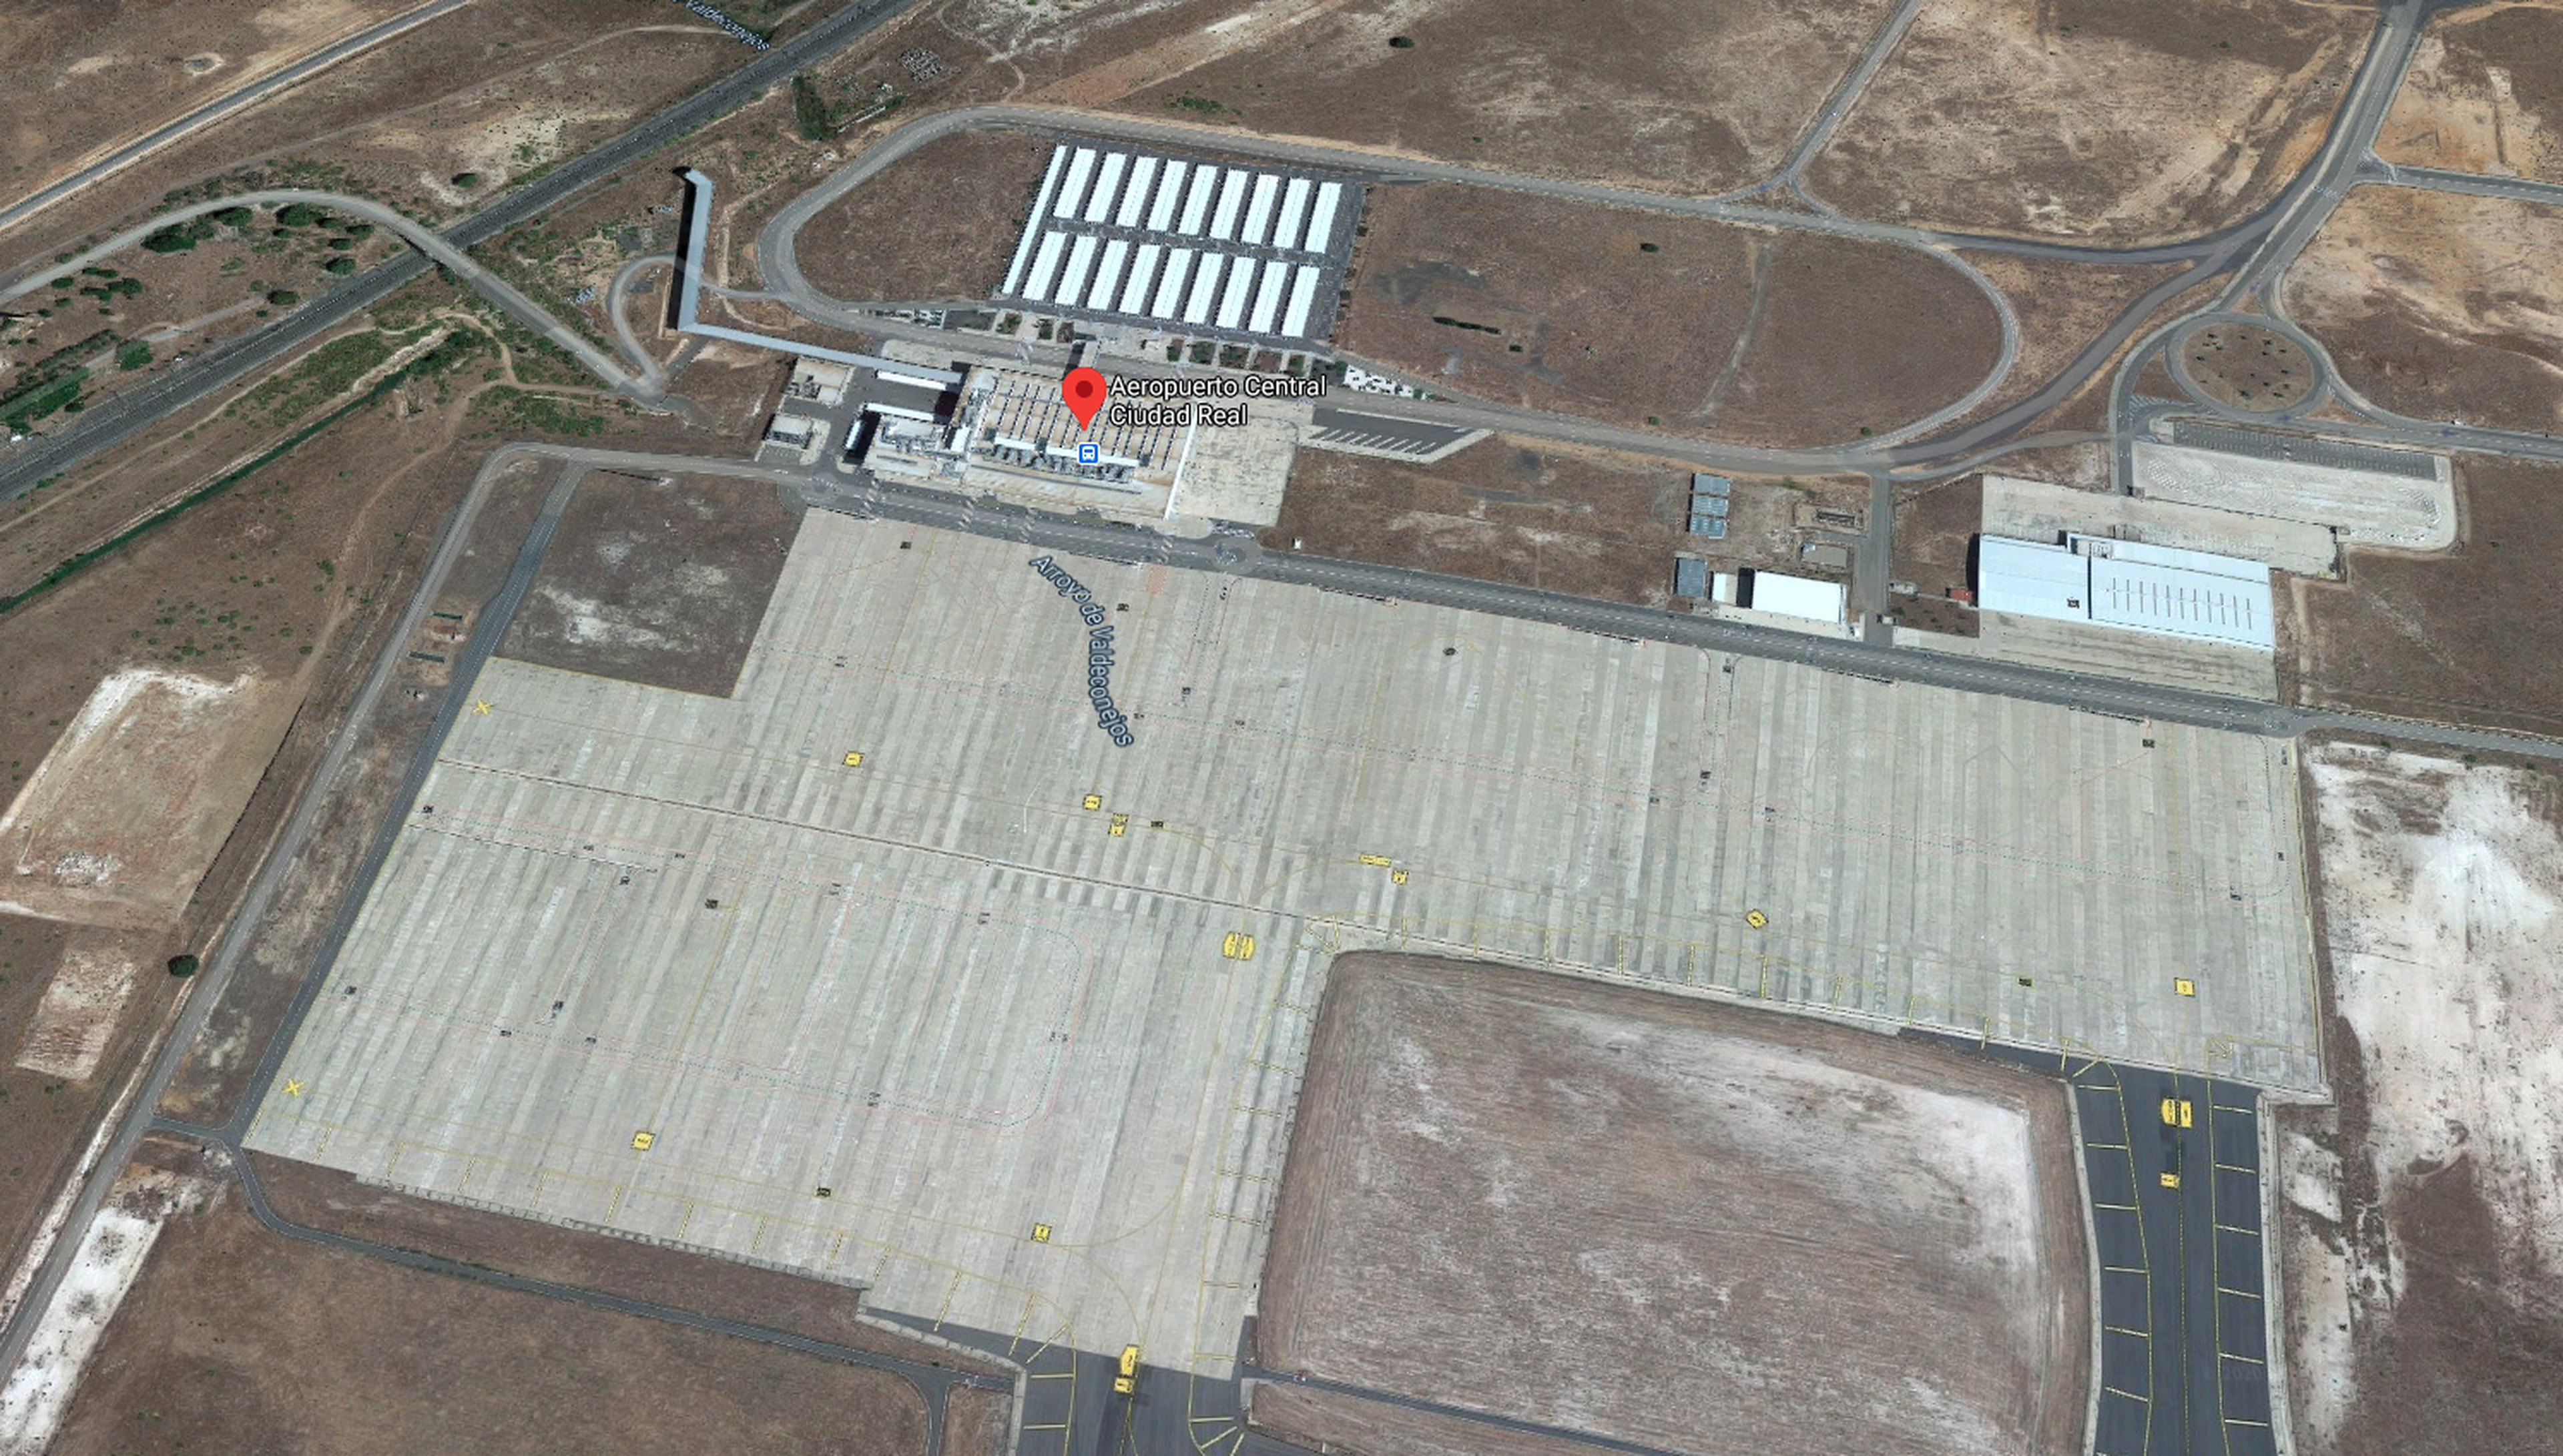 Vista aérea del Aeropuerto de Ciudad Real en Google Maps.